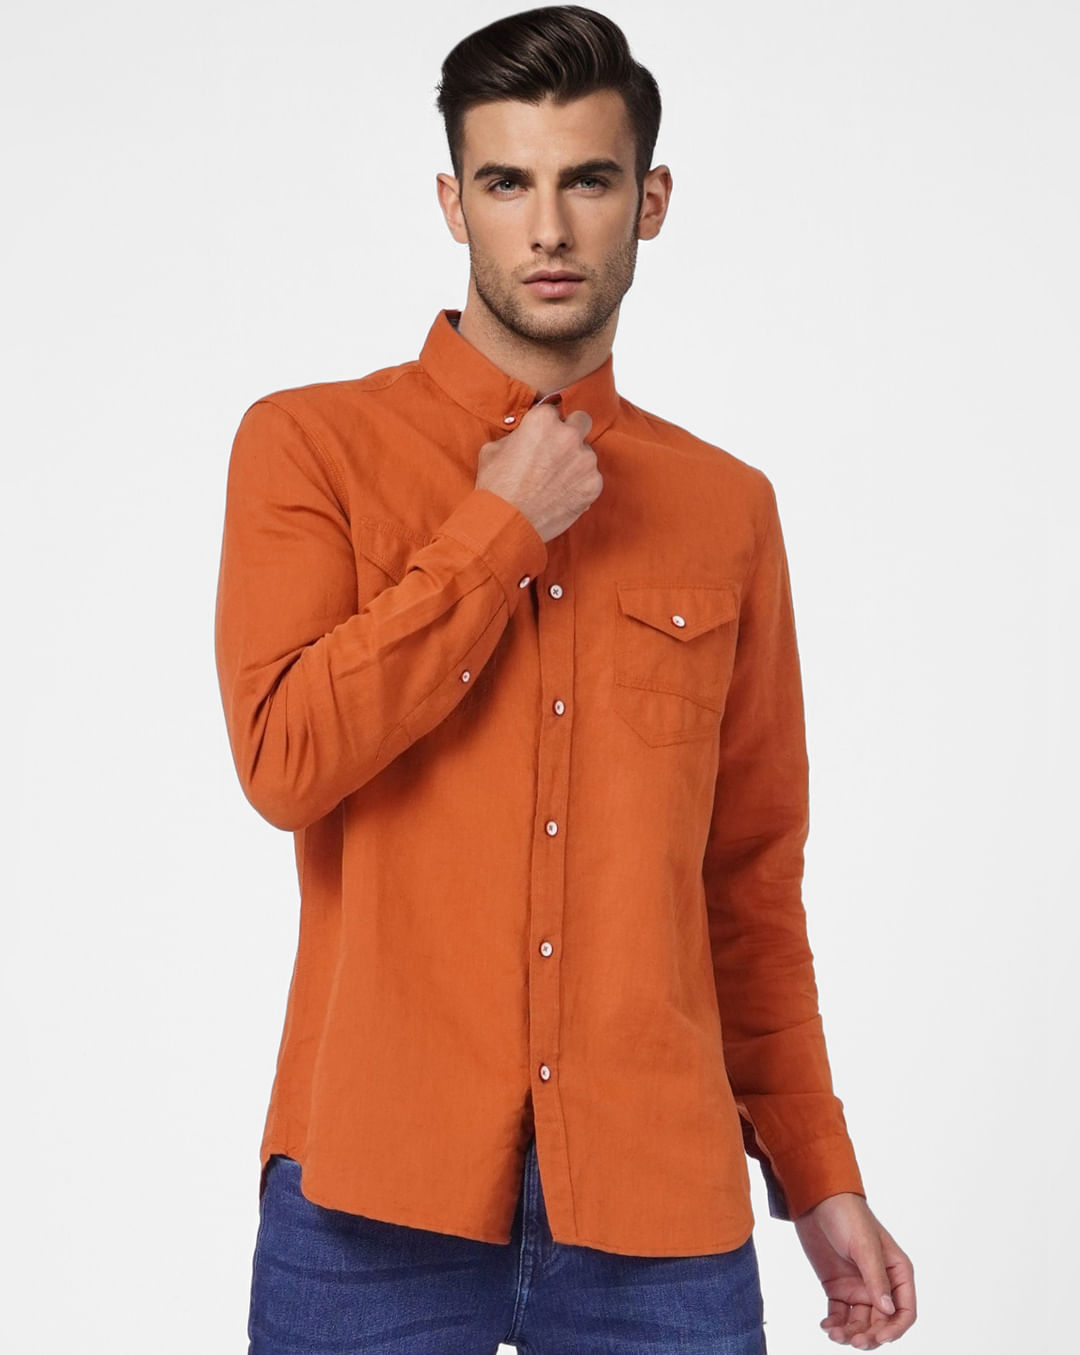 Buy Orange Linen Blend Full Sleeves Shirt for Men